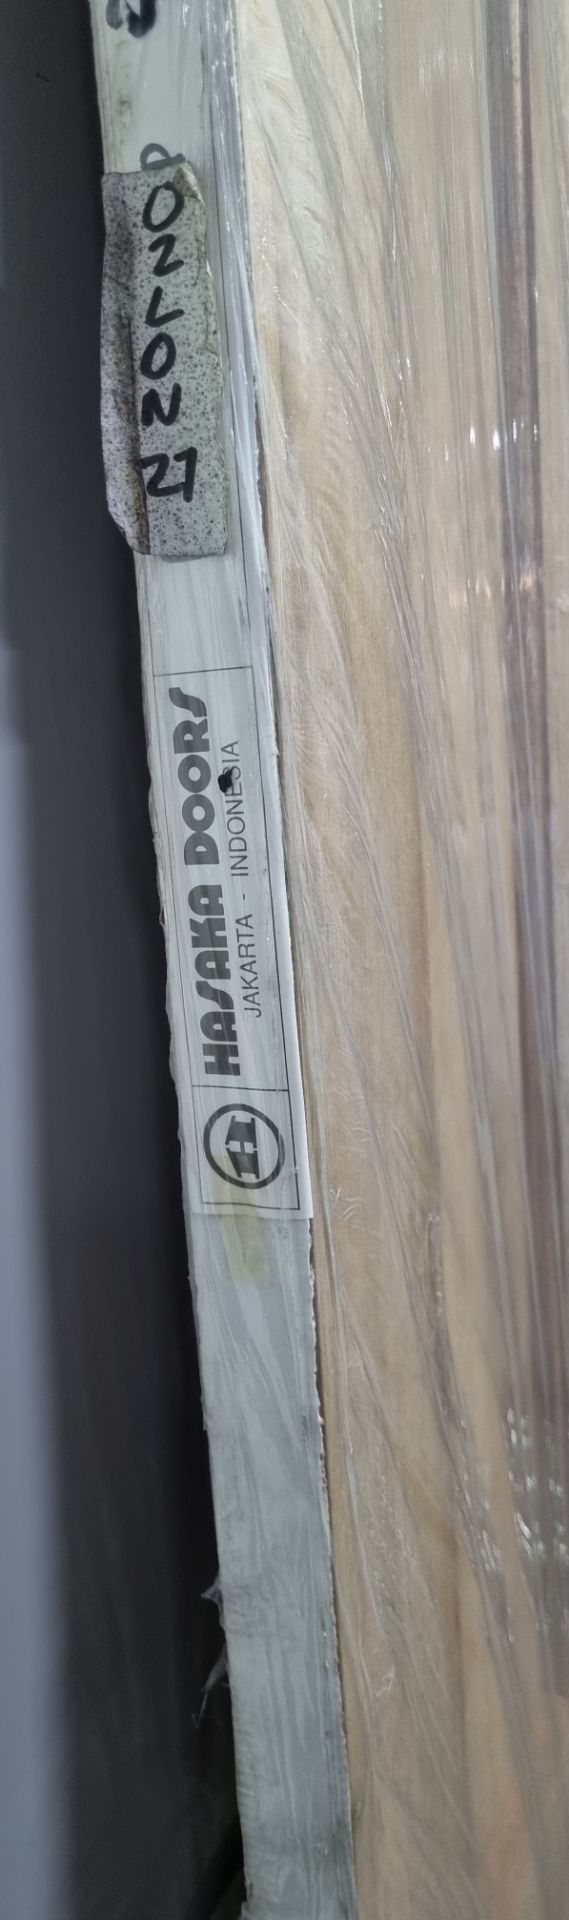 Hasaka Doors Hardwood Door 78" x 27" x 35mm - Image 4 of 4